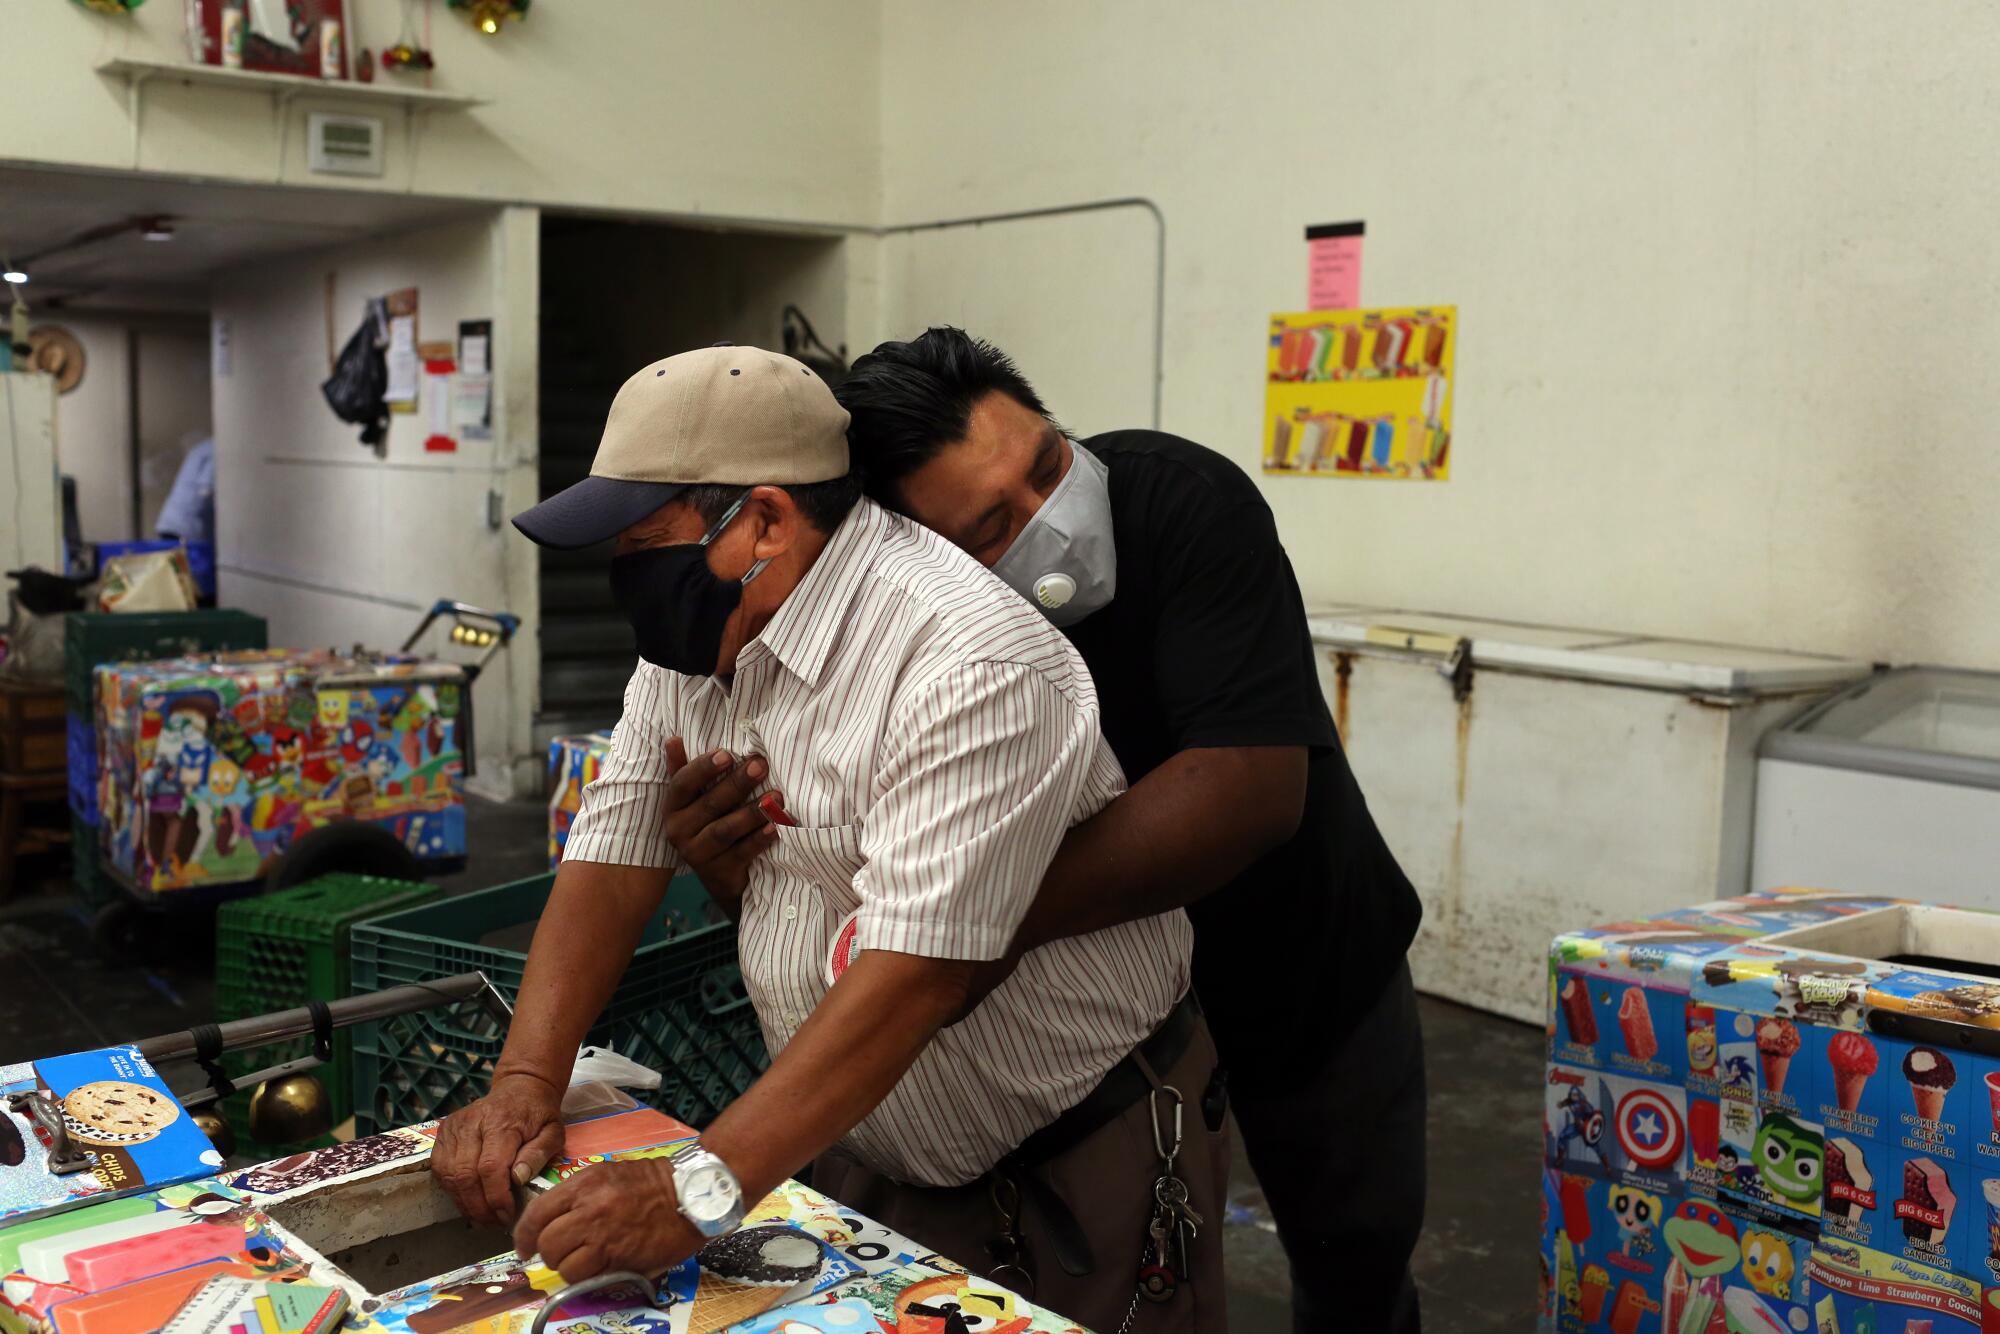 Oscar Samano, right, hugs Rios inside Barahona Ice Cream.